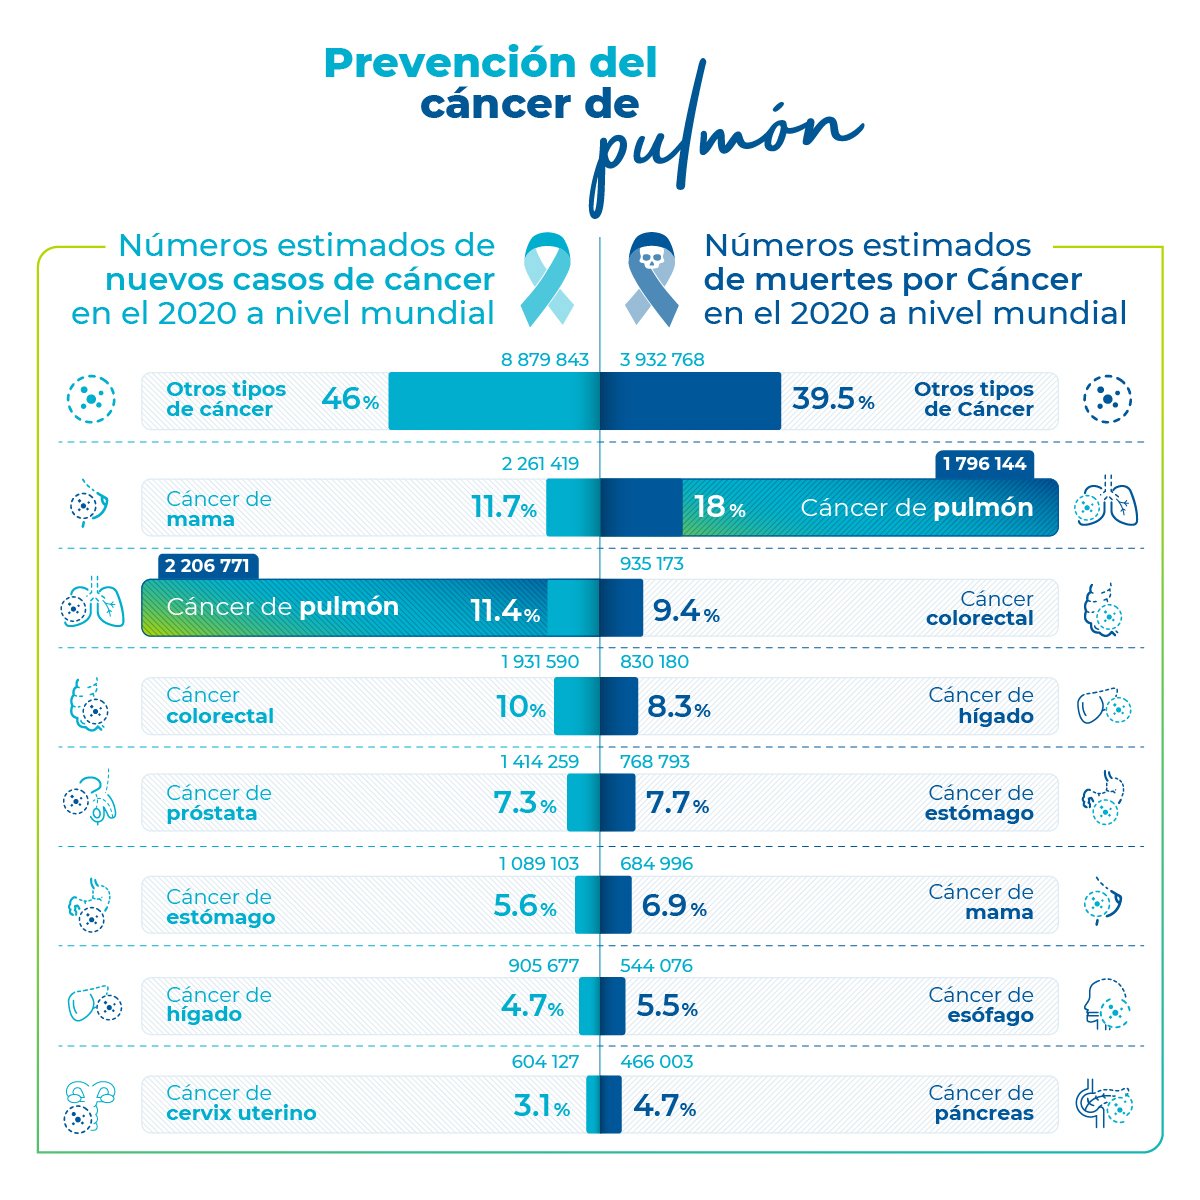 infografia_prevención_cancer_pulmon